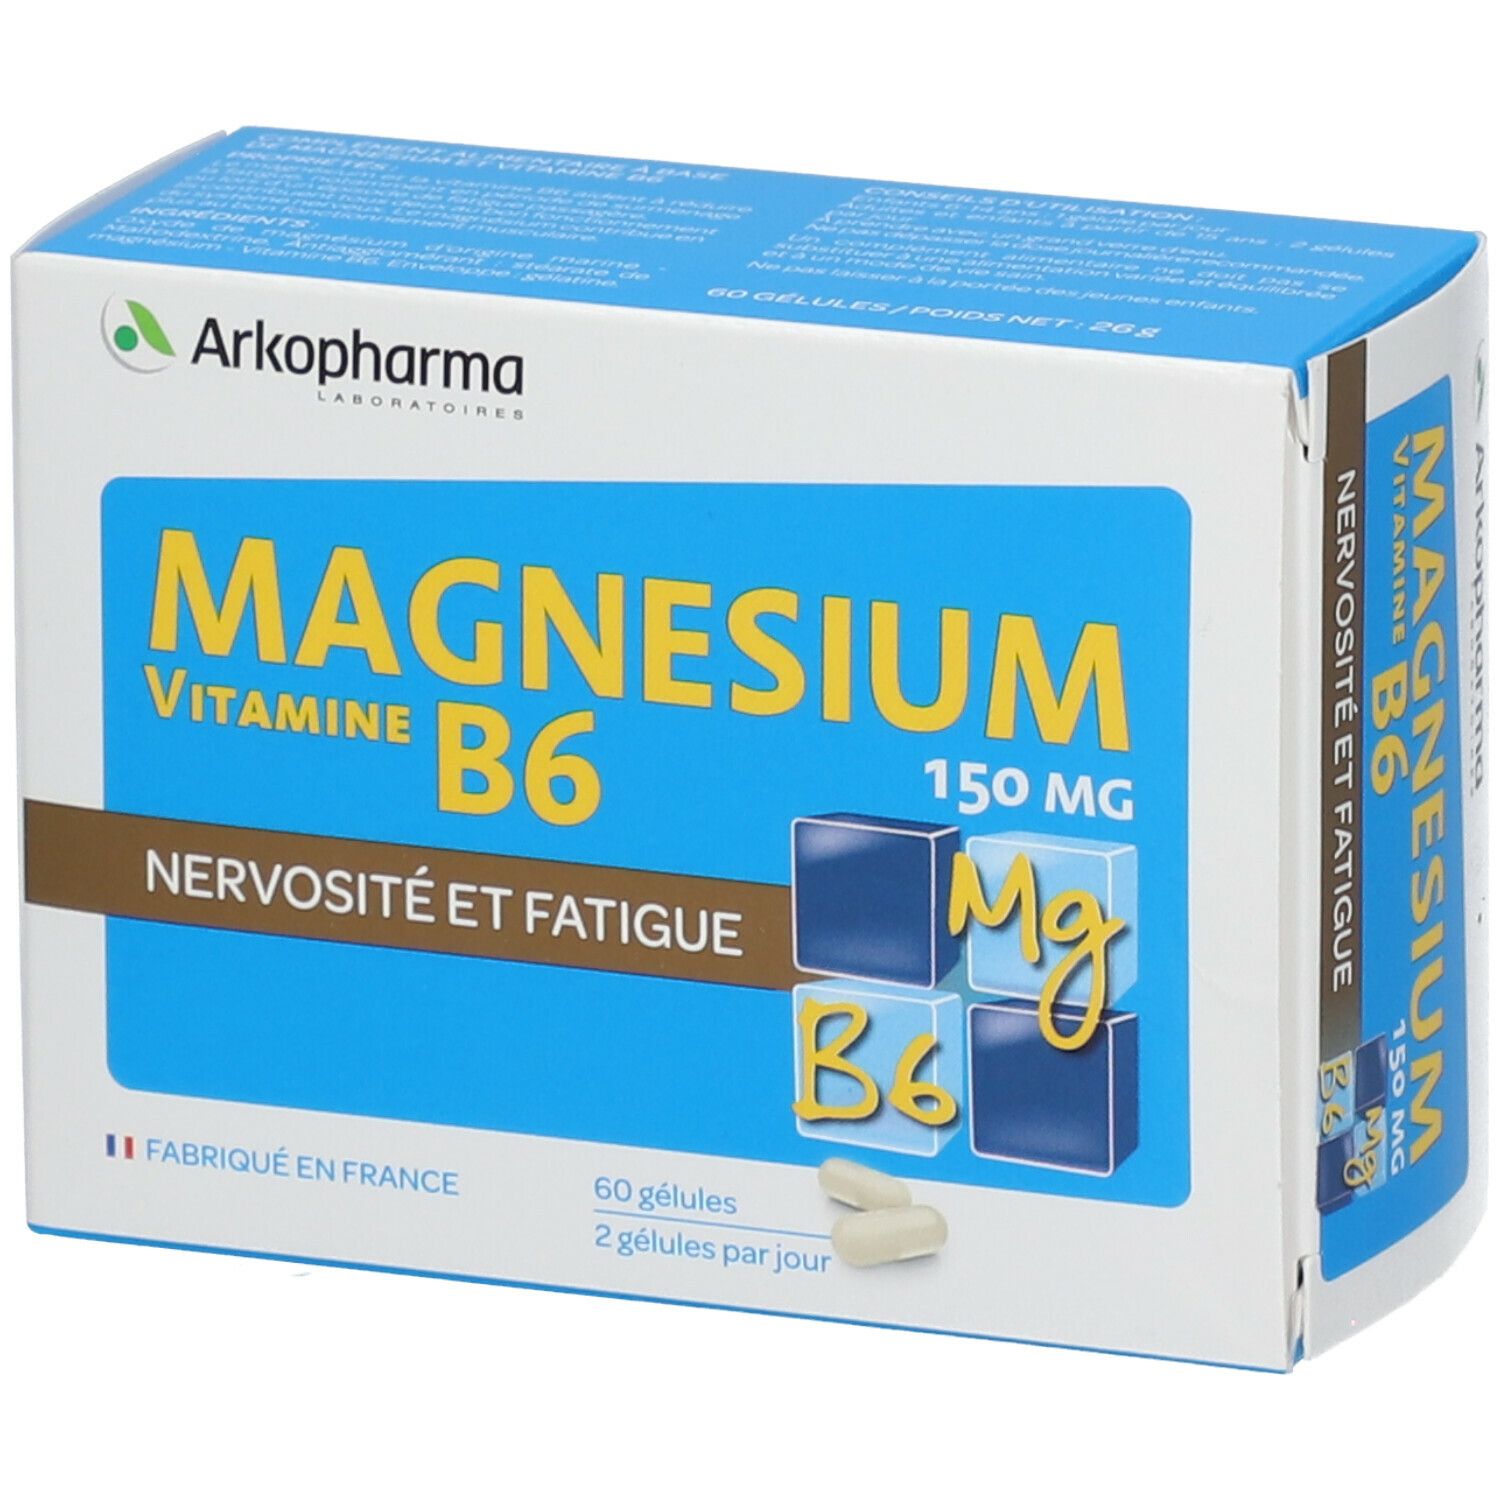 Image of Arkopharma Magnesium Vitamin B6